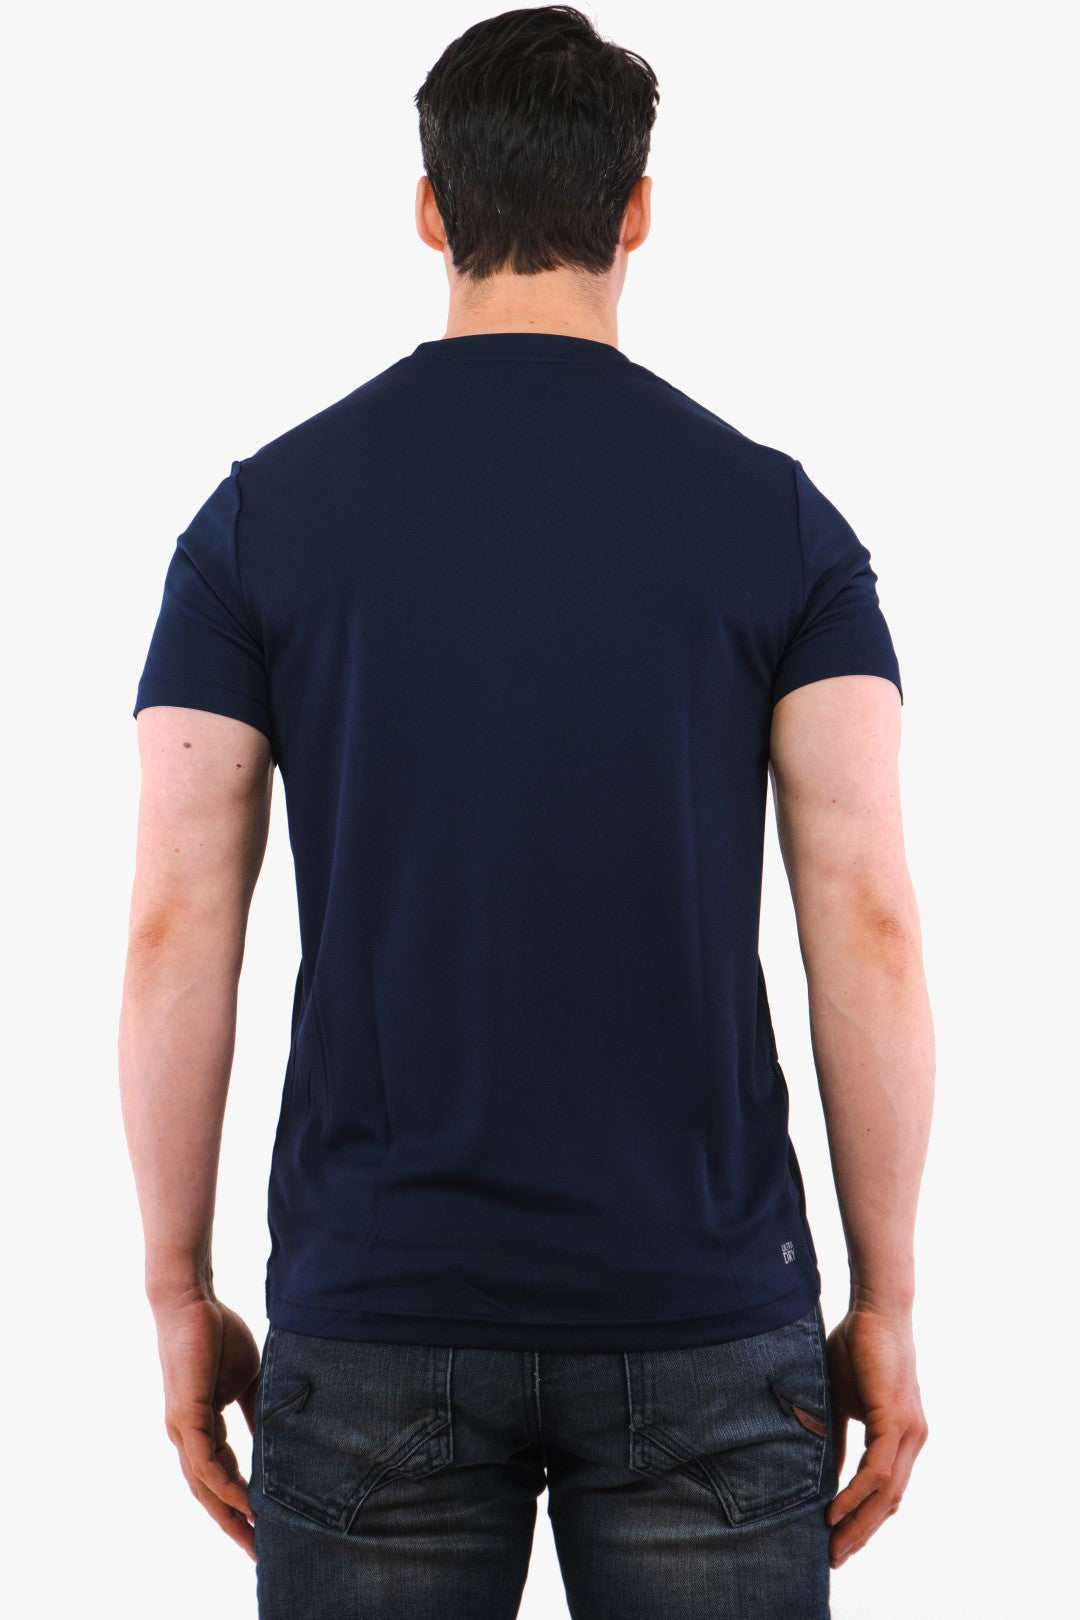 T-Shirt Technique Lacoste De Couleur Marine Homme